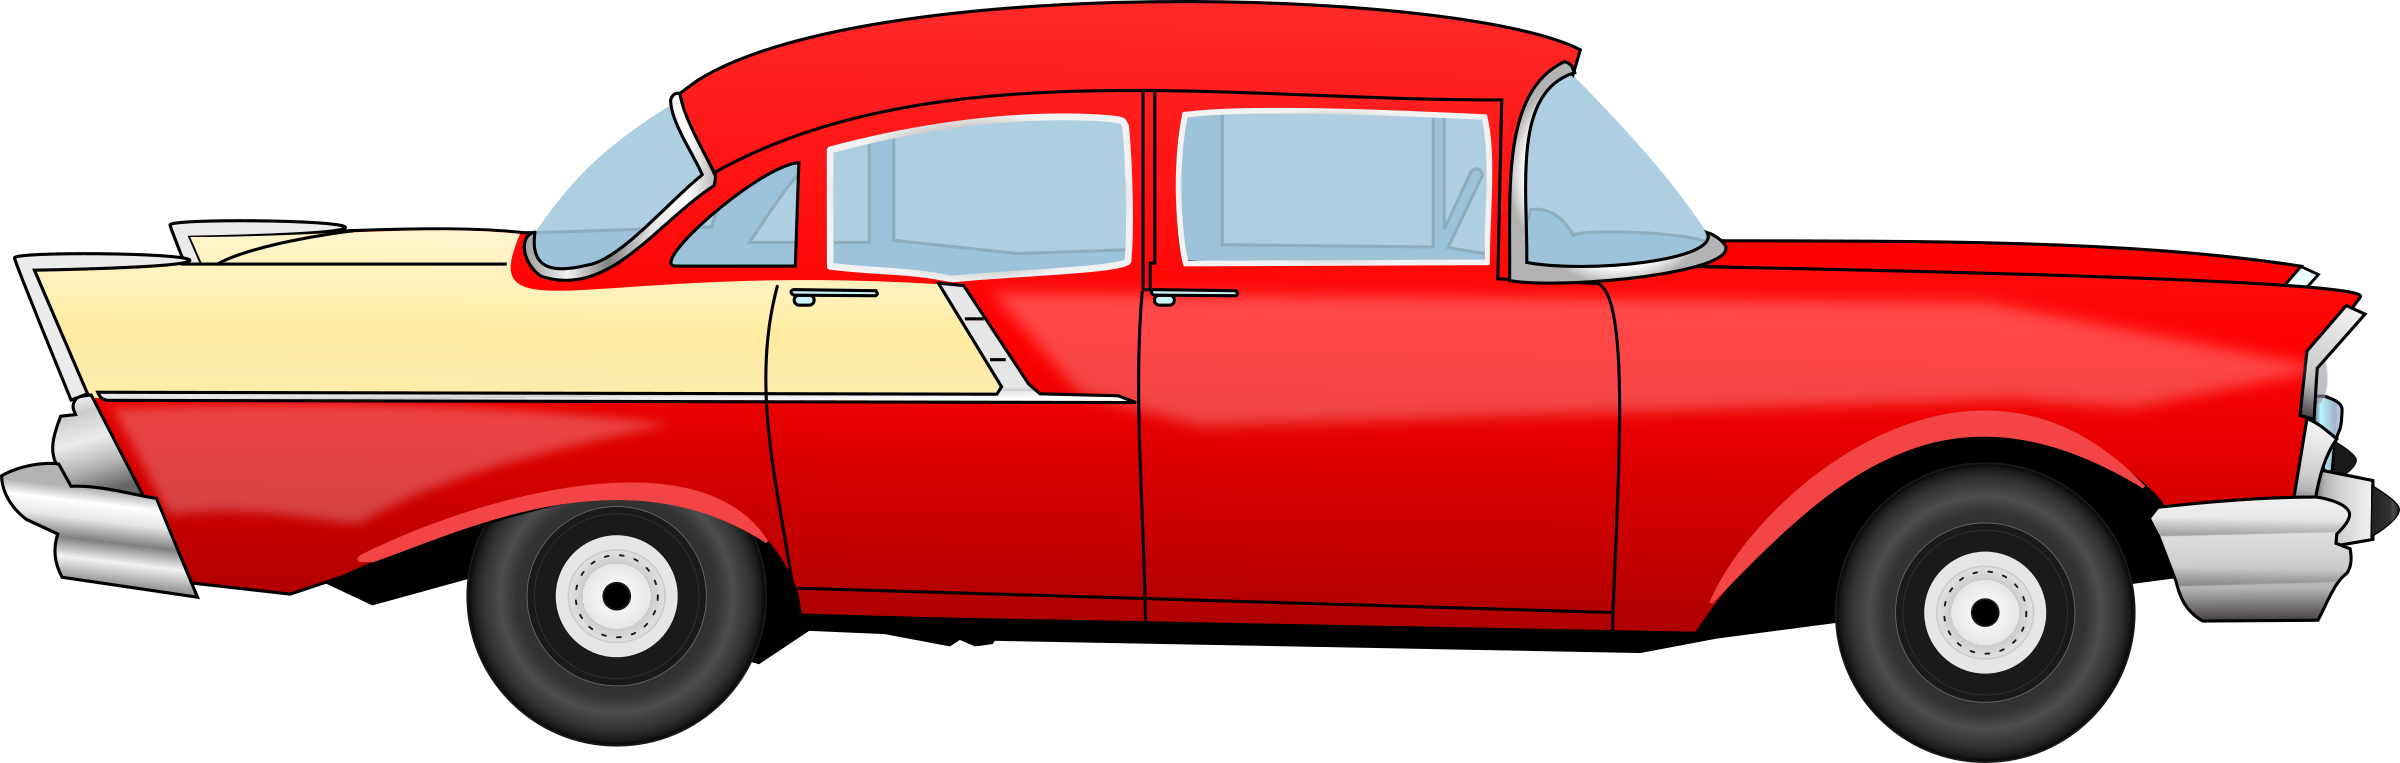 2400 X 763 3 - Classic Car Clipart (2400x763), Png Download